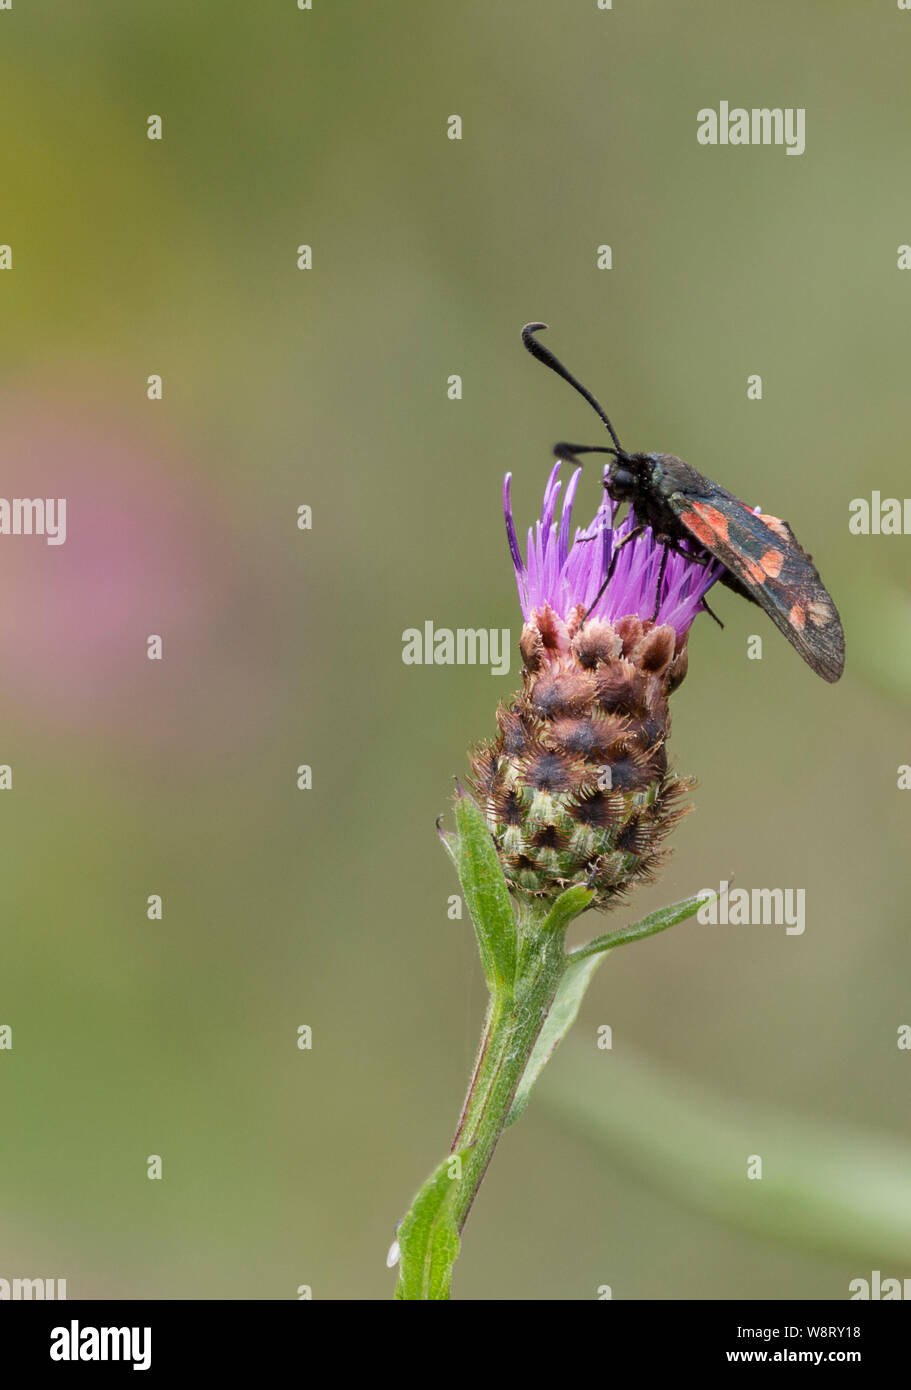 Sechs spot Burnet Motte (Zygaena Filipendulae) auf lila Blümchen des flockenblume (Centaurea nigra) oder hardheads. Grünlich-schwarze Motte mit roten Flecken am Flügel. Stockfoto